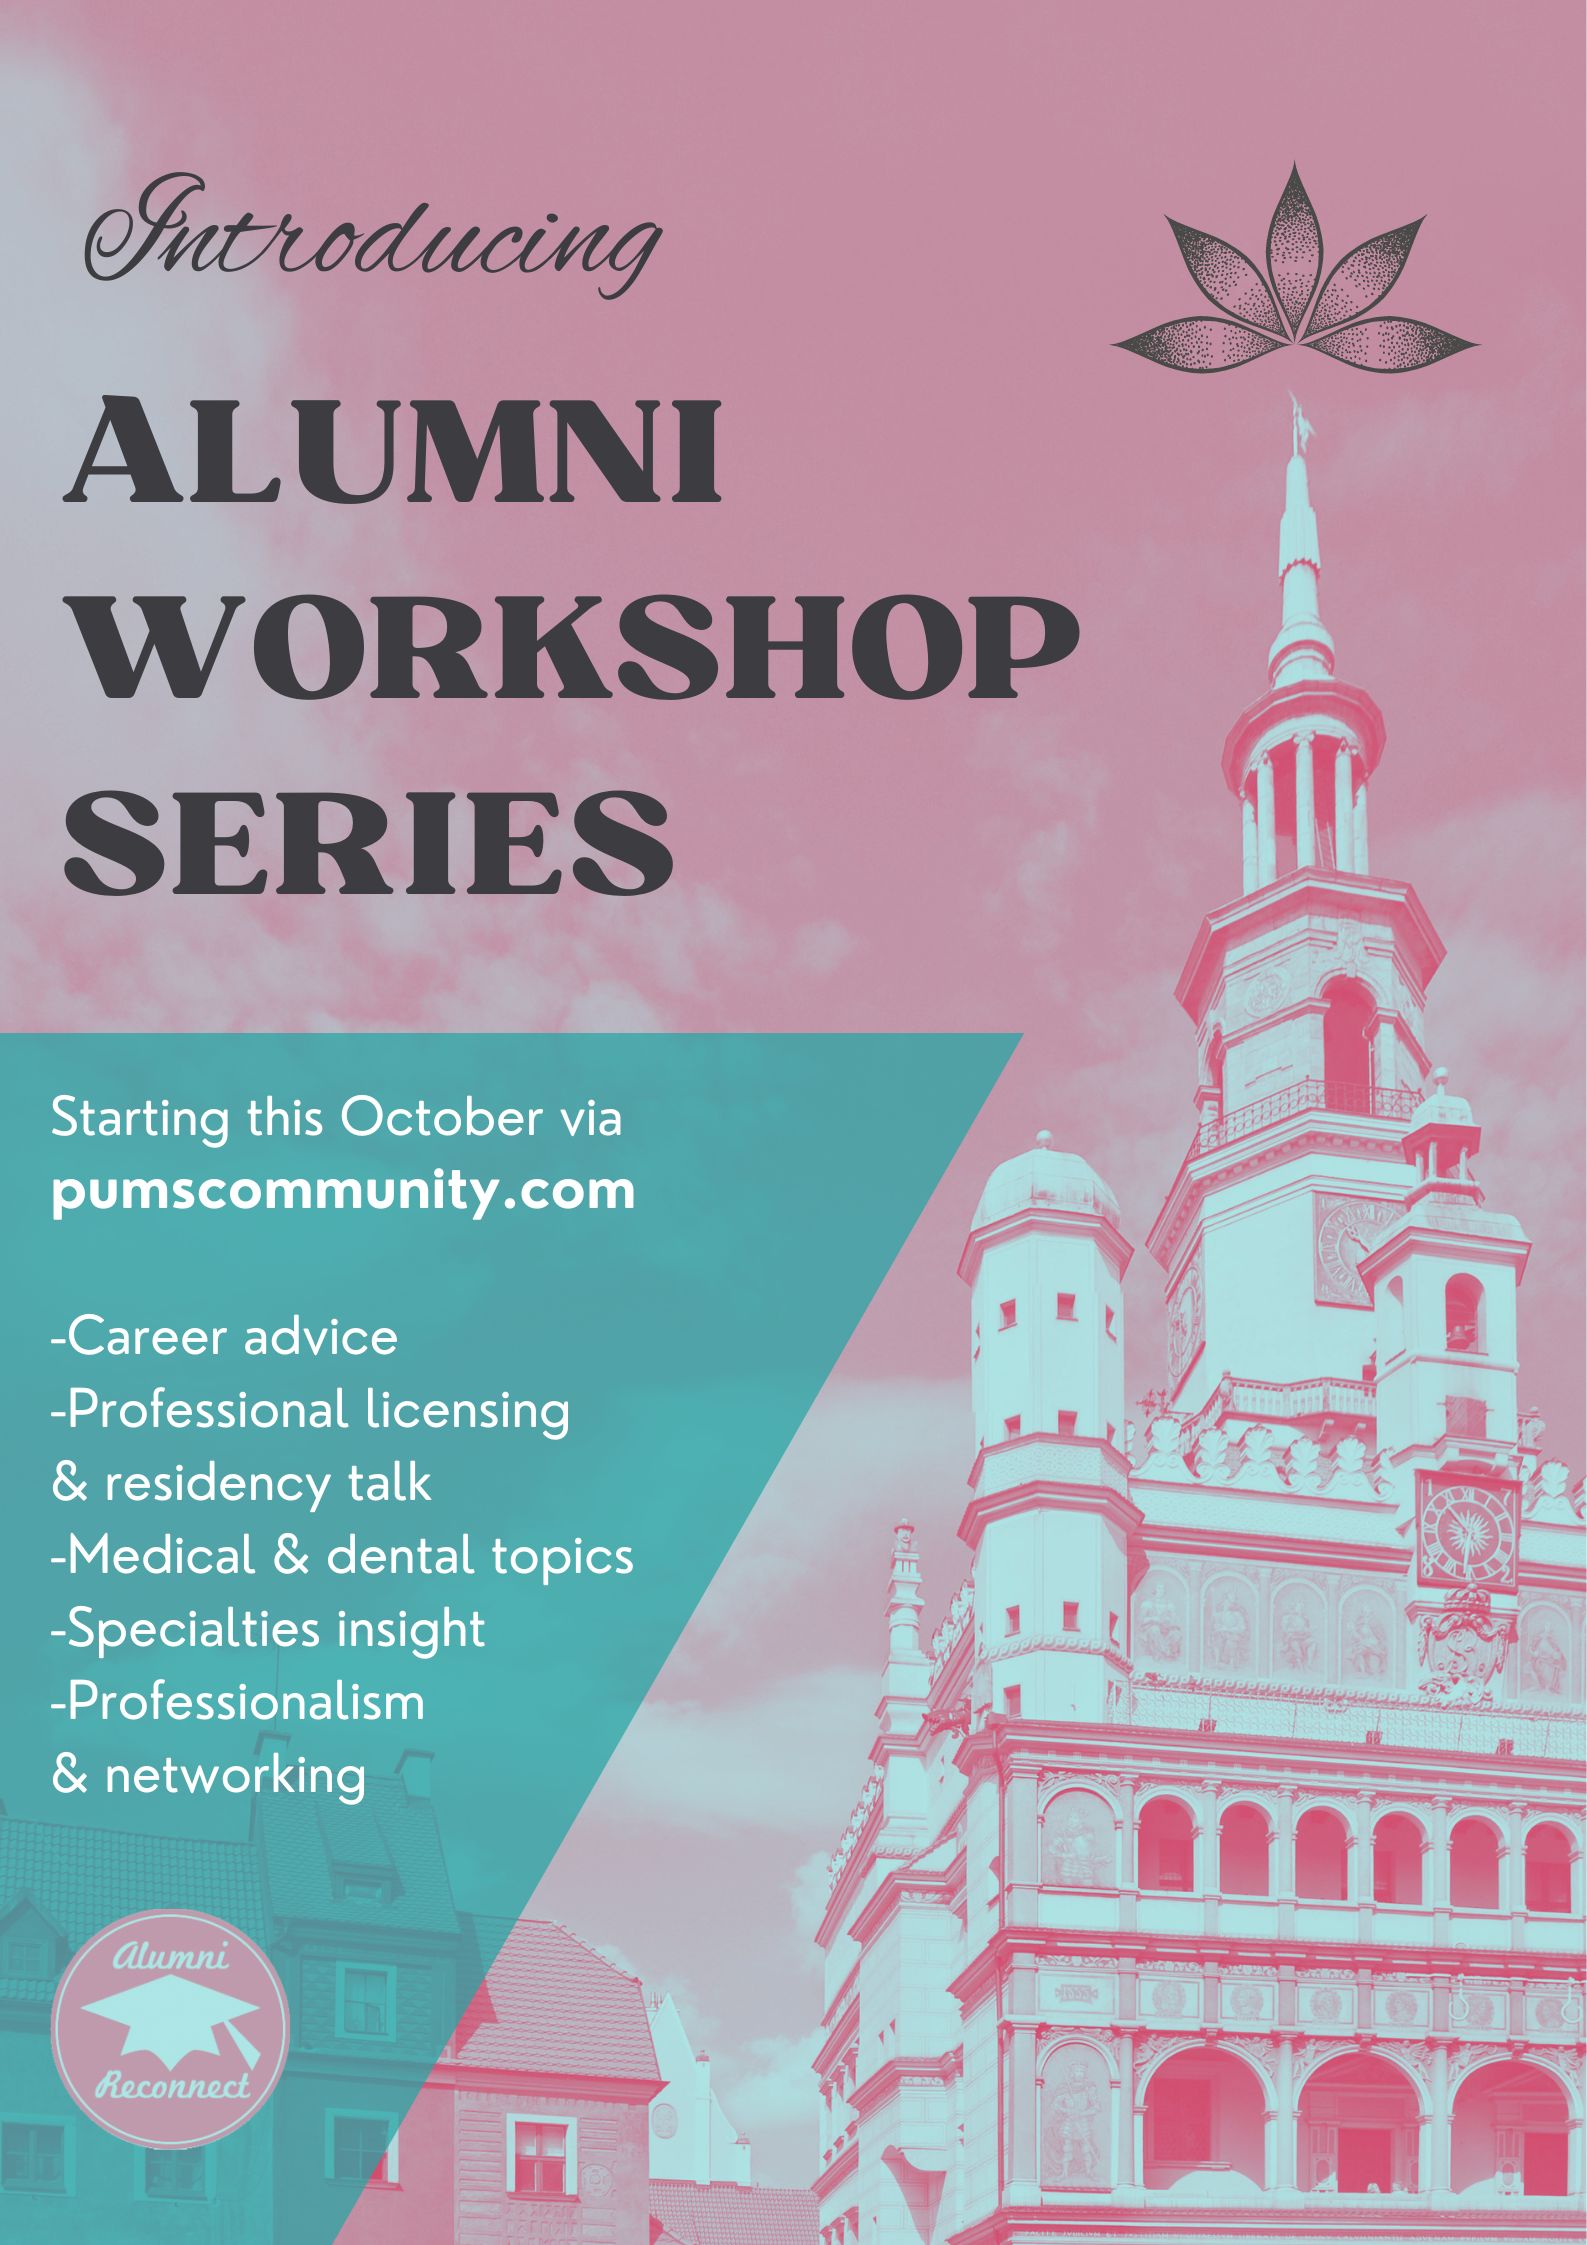 Alumni Workshop Series